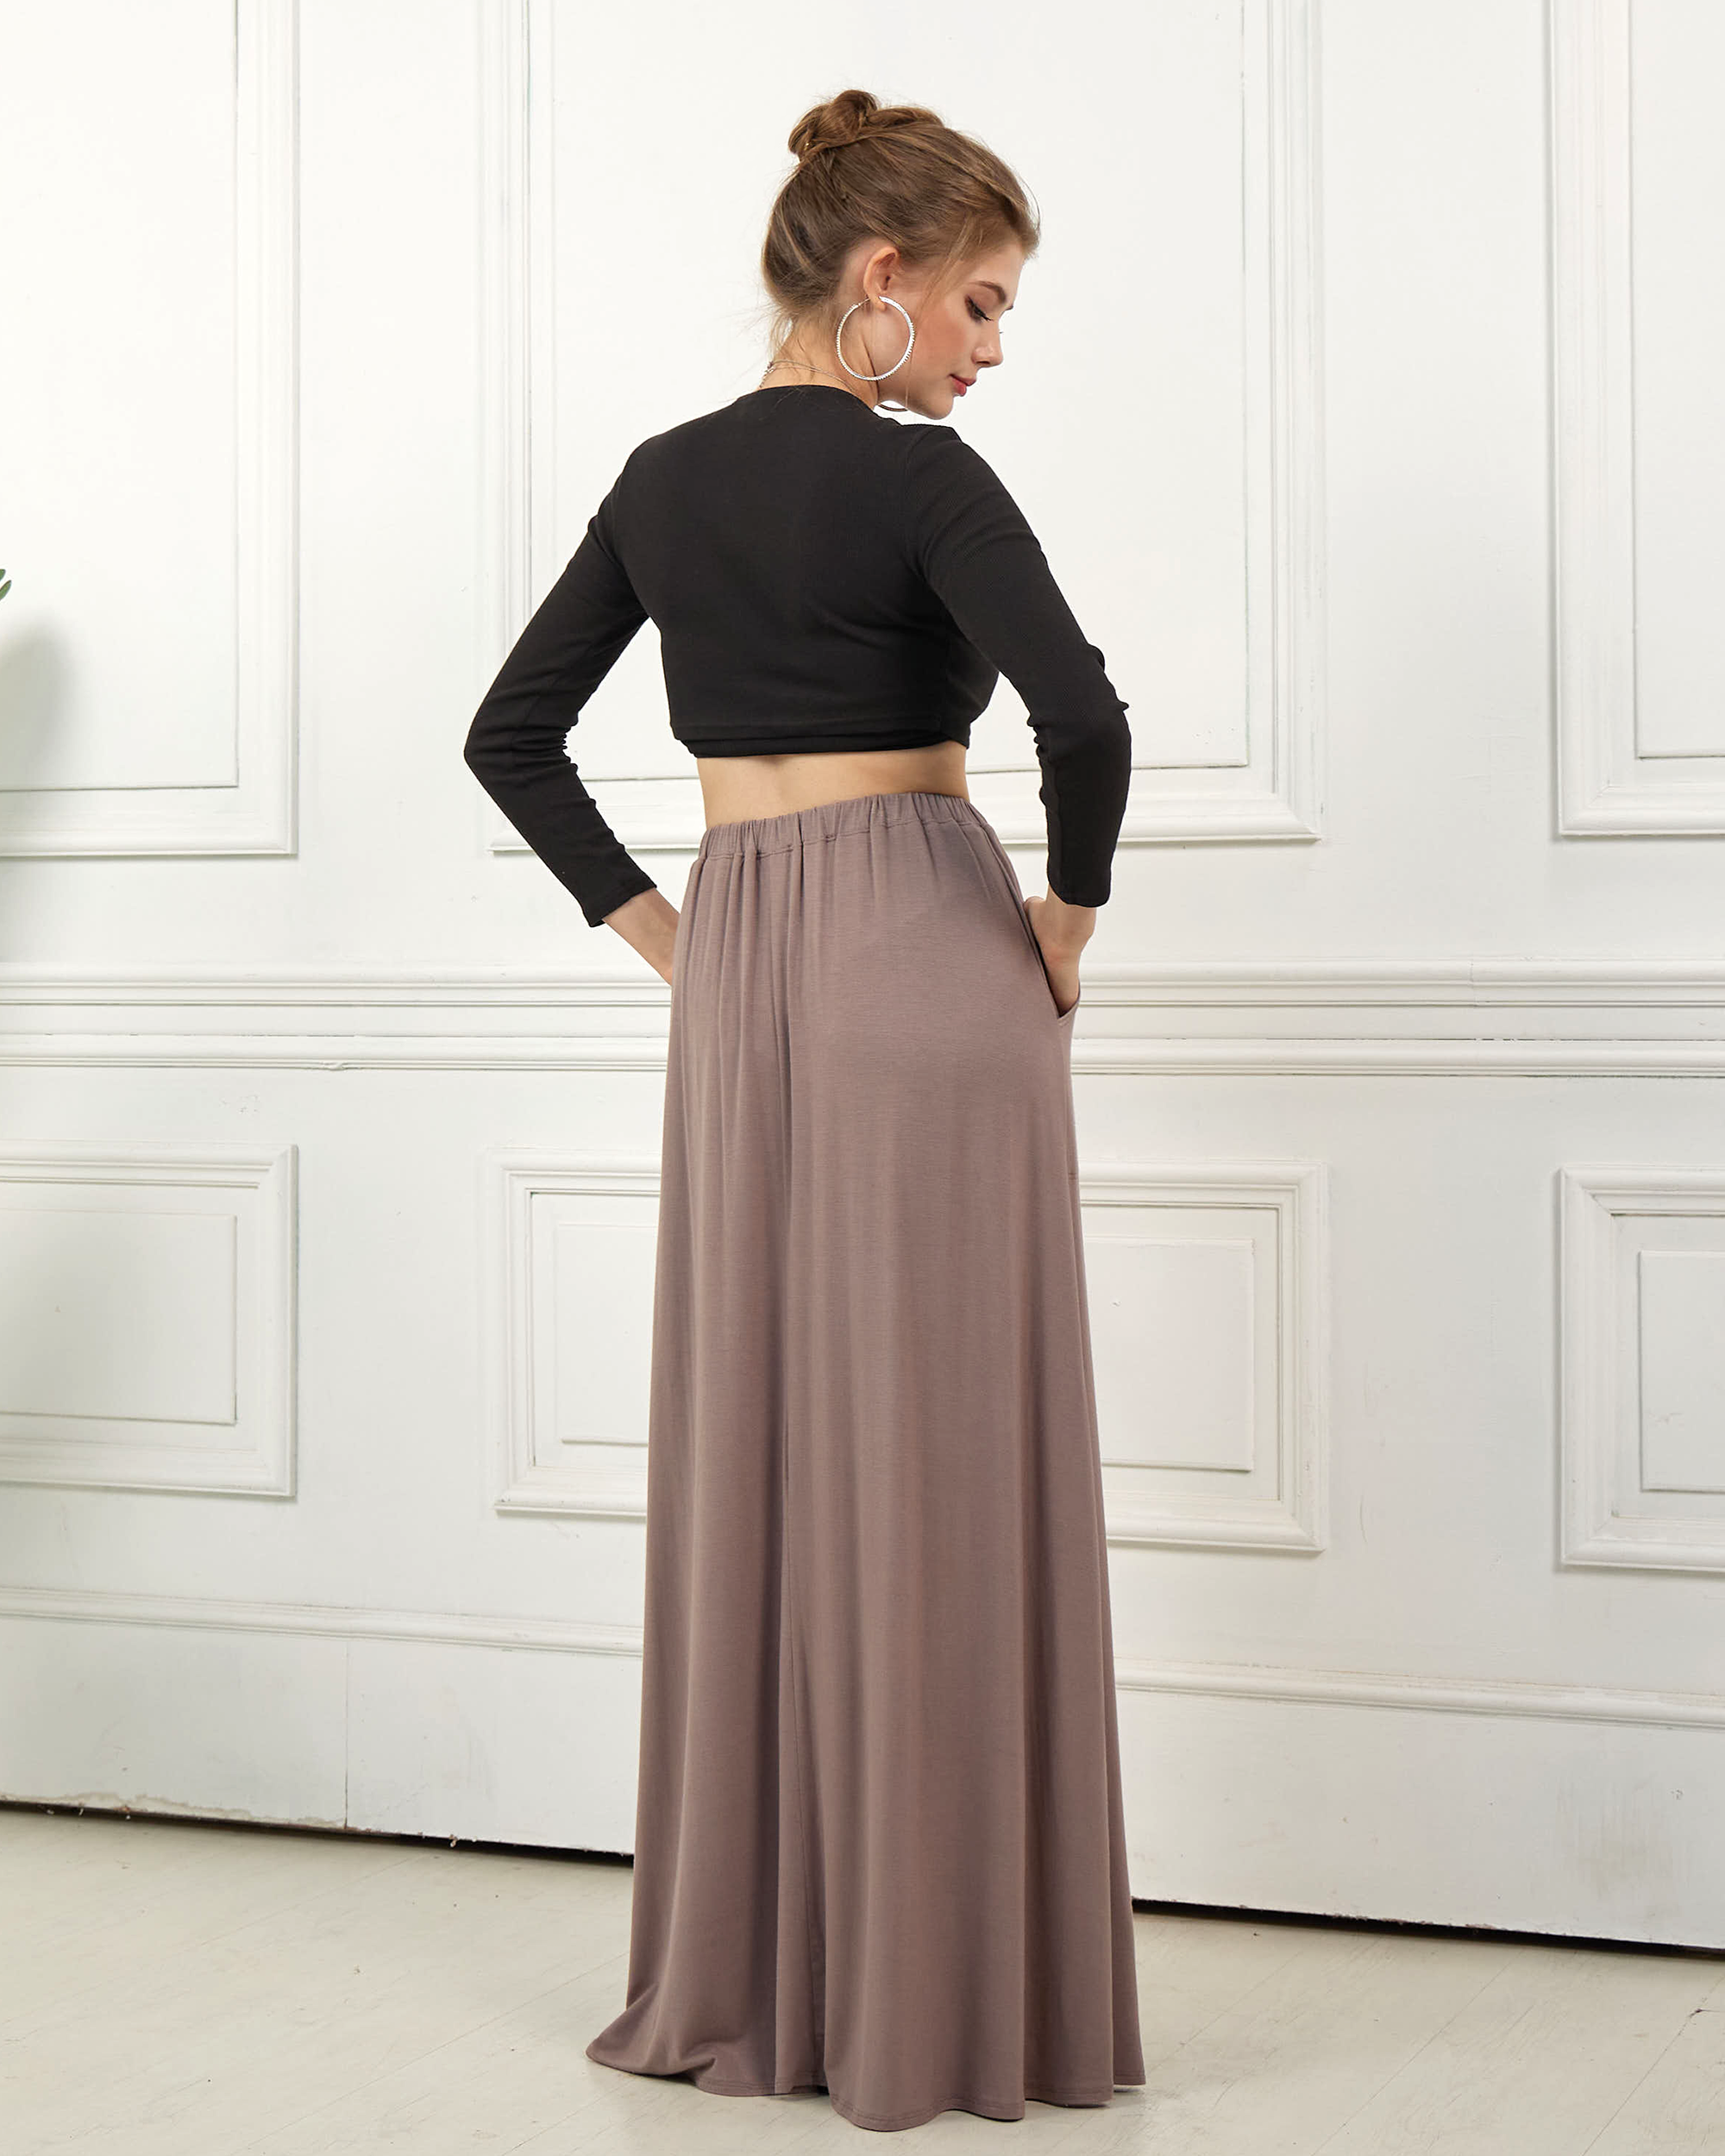 Mocha Maxi Skirt - Soft & Lightweight Design